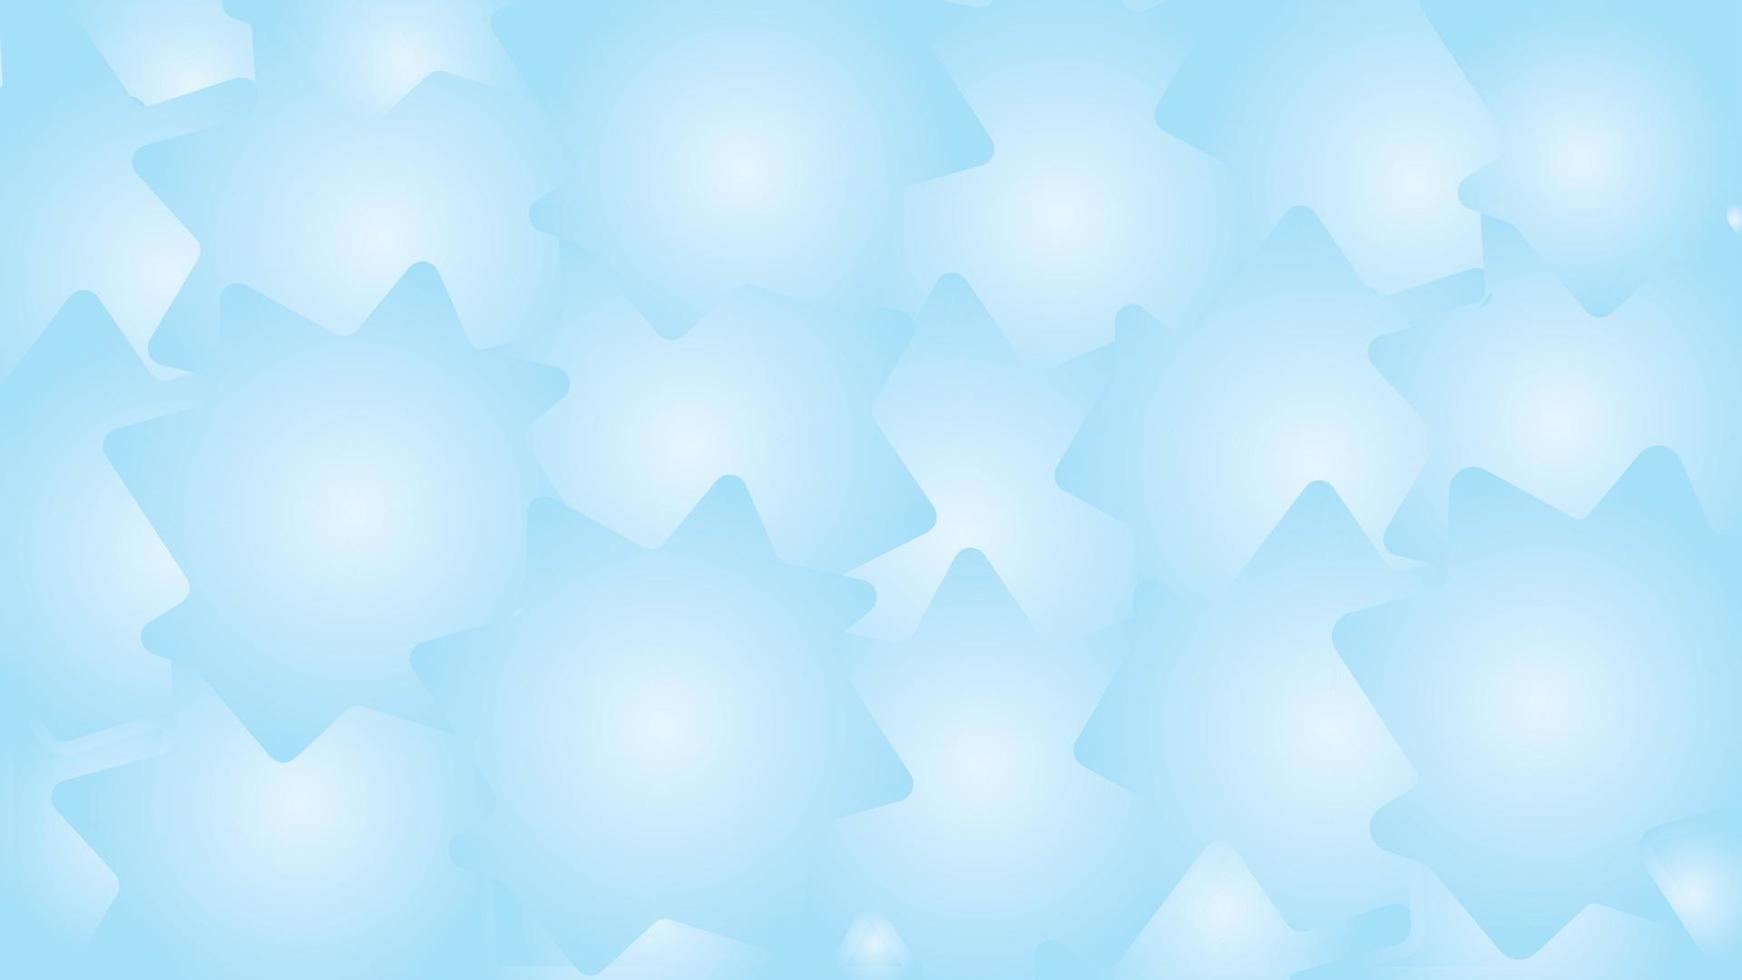 fond bleu abstrait avec des étoiles, fond dégradé de texture douce bleu aqua vecteur